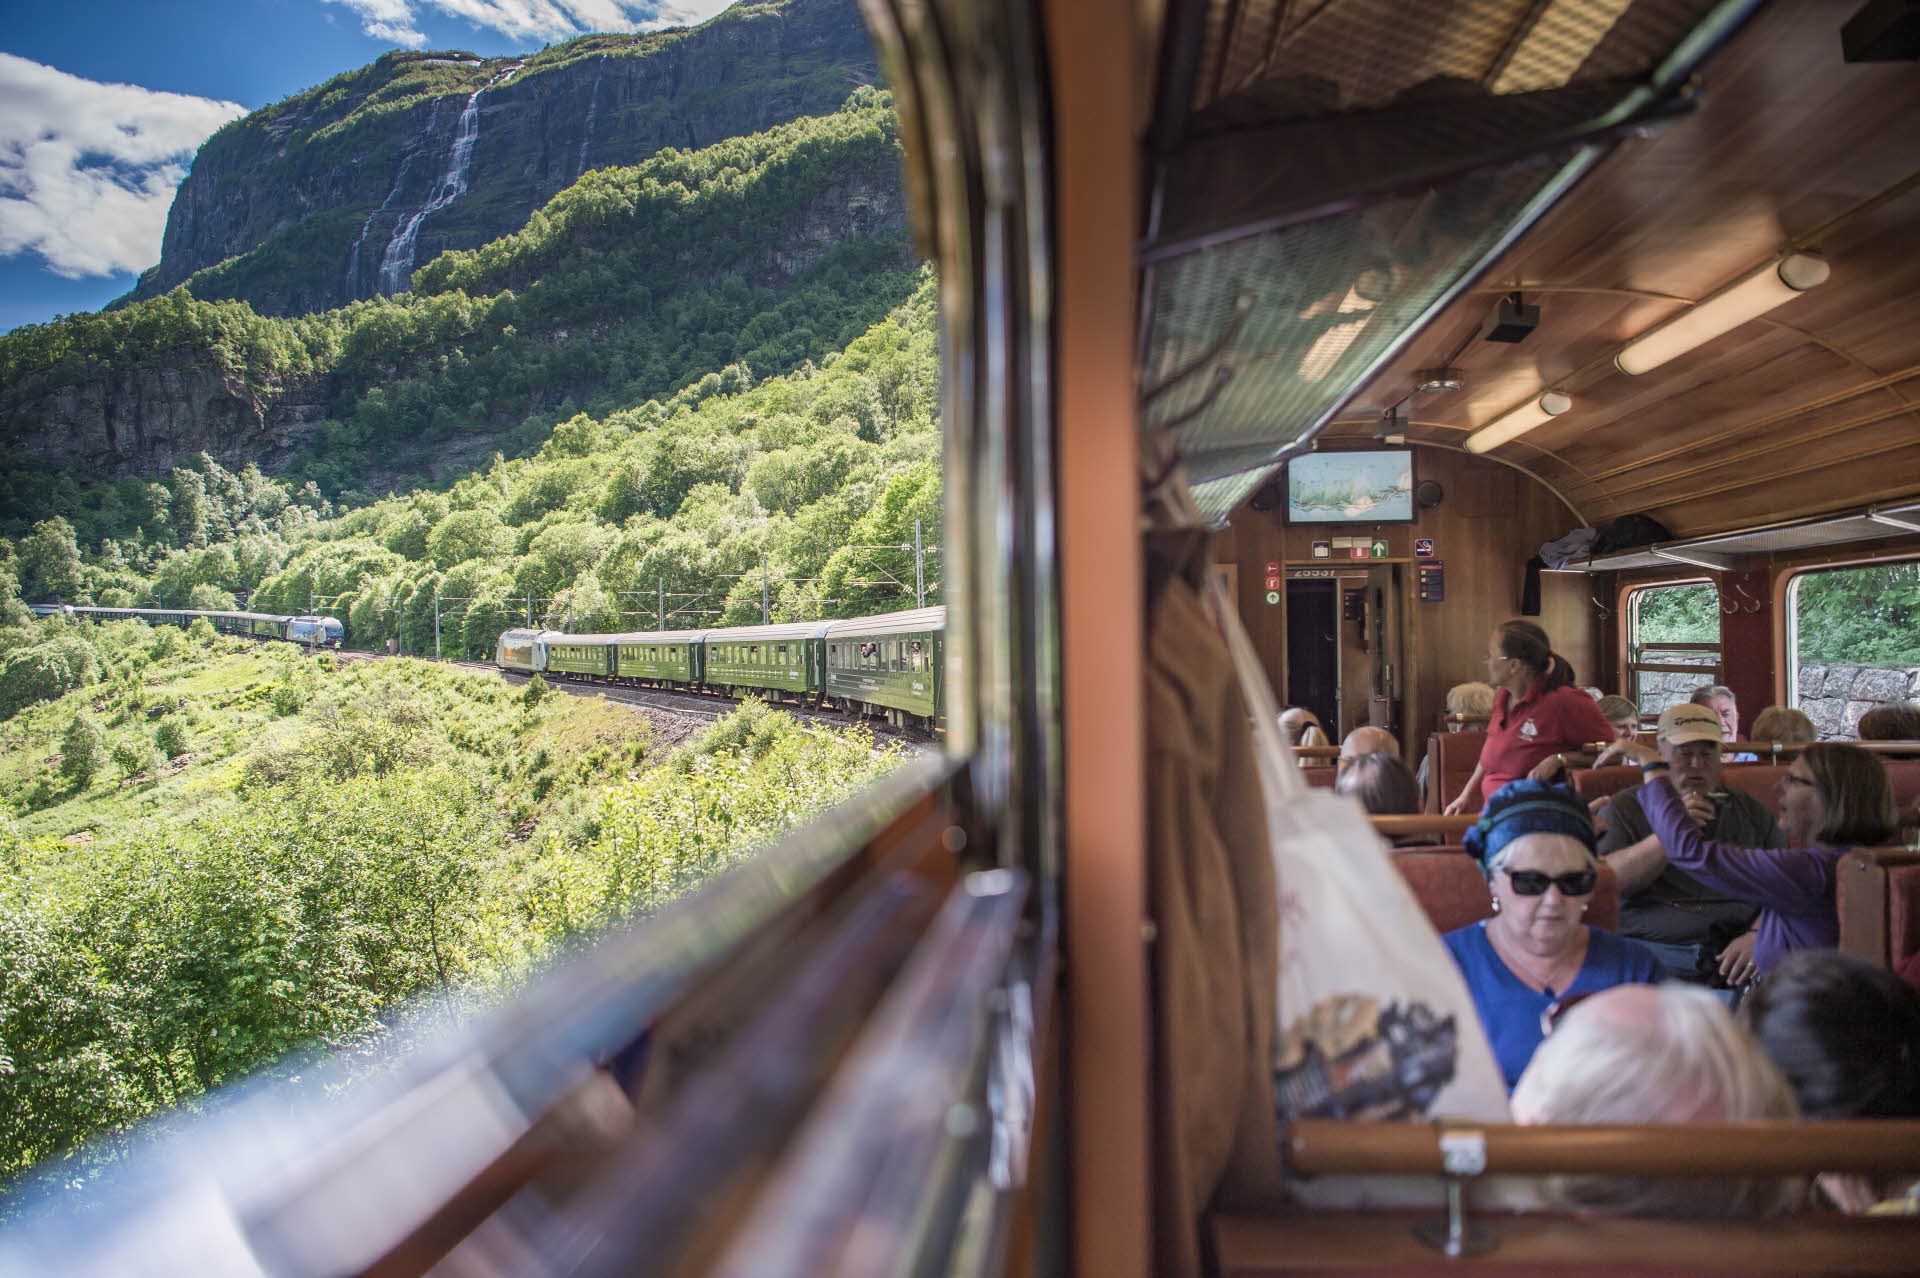 从弗洛姆列车上的窗口可以看到弗洛姆斯达伦山谷和一列驶来的列车